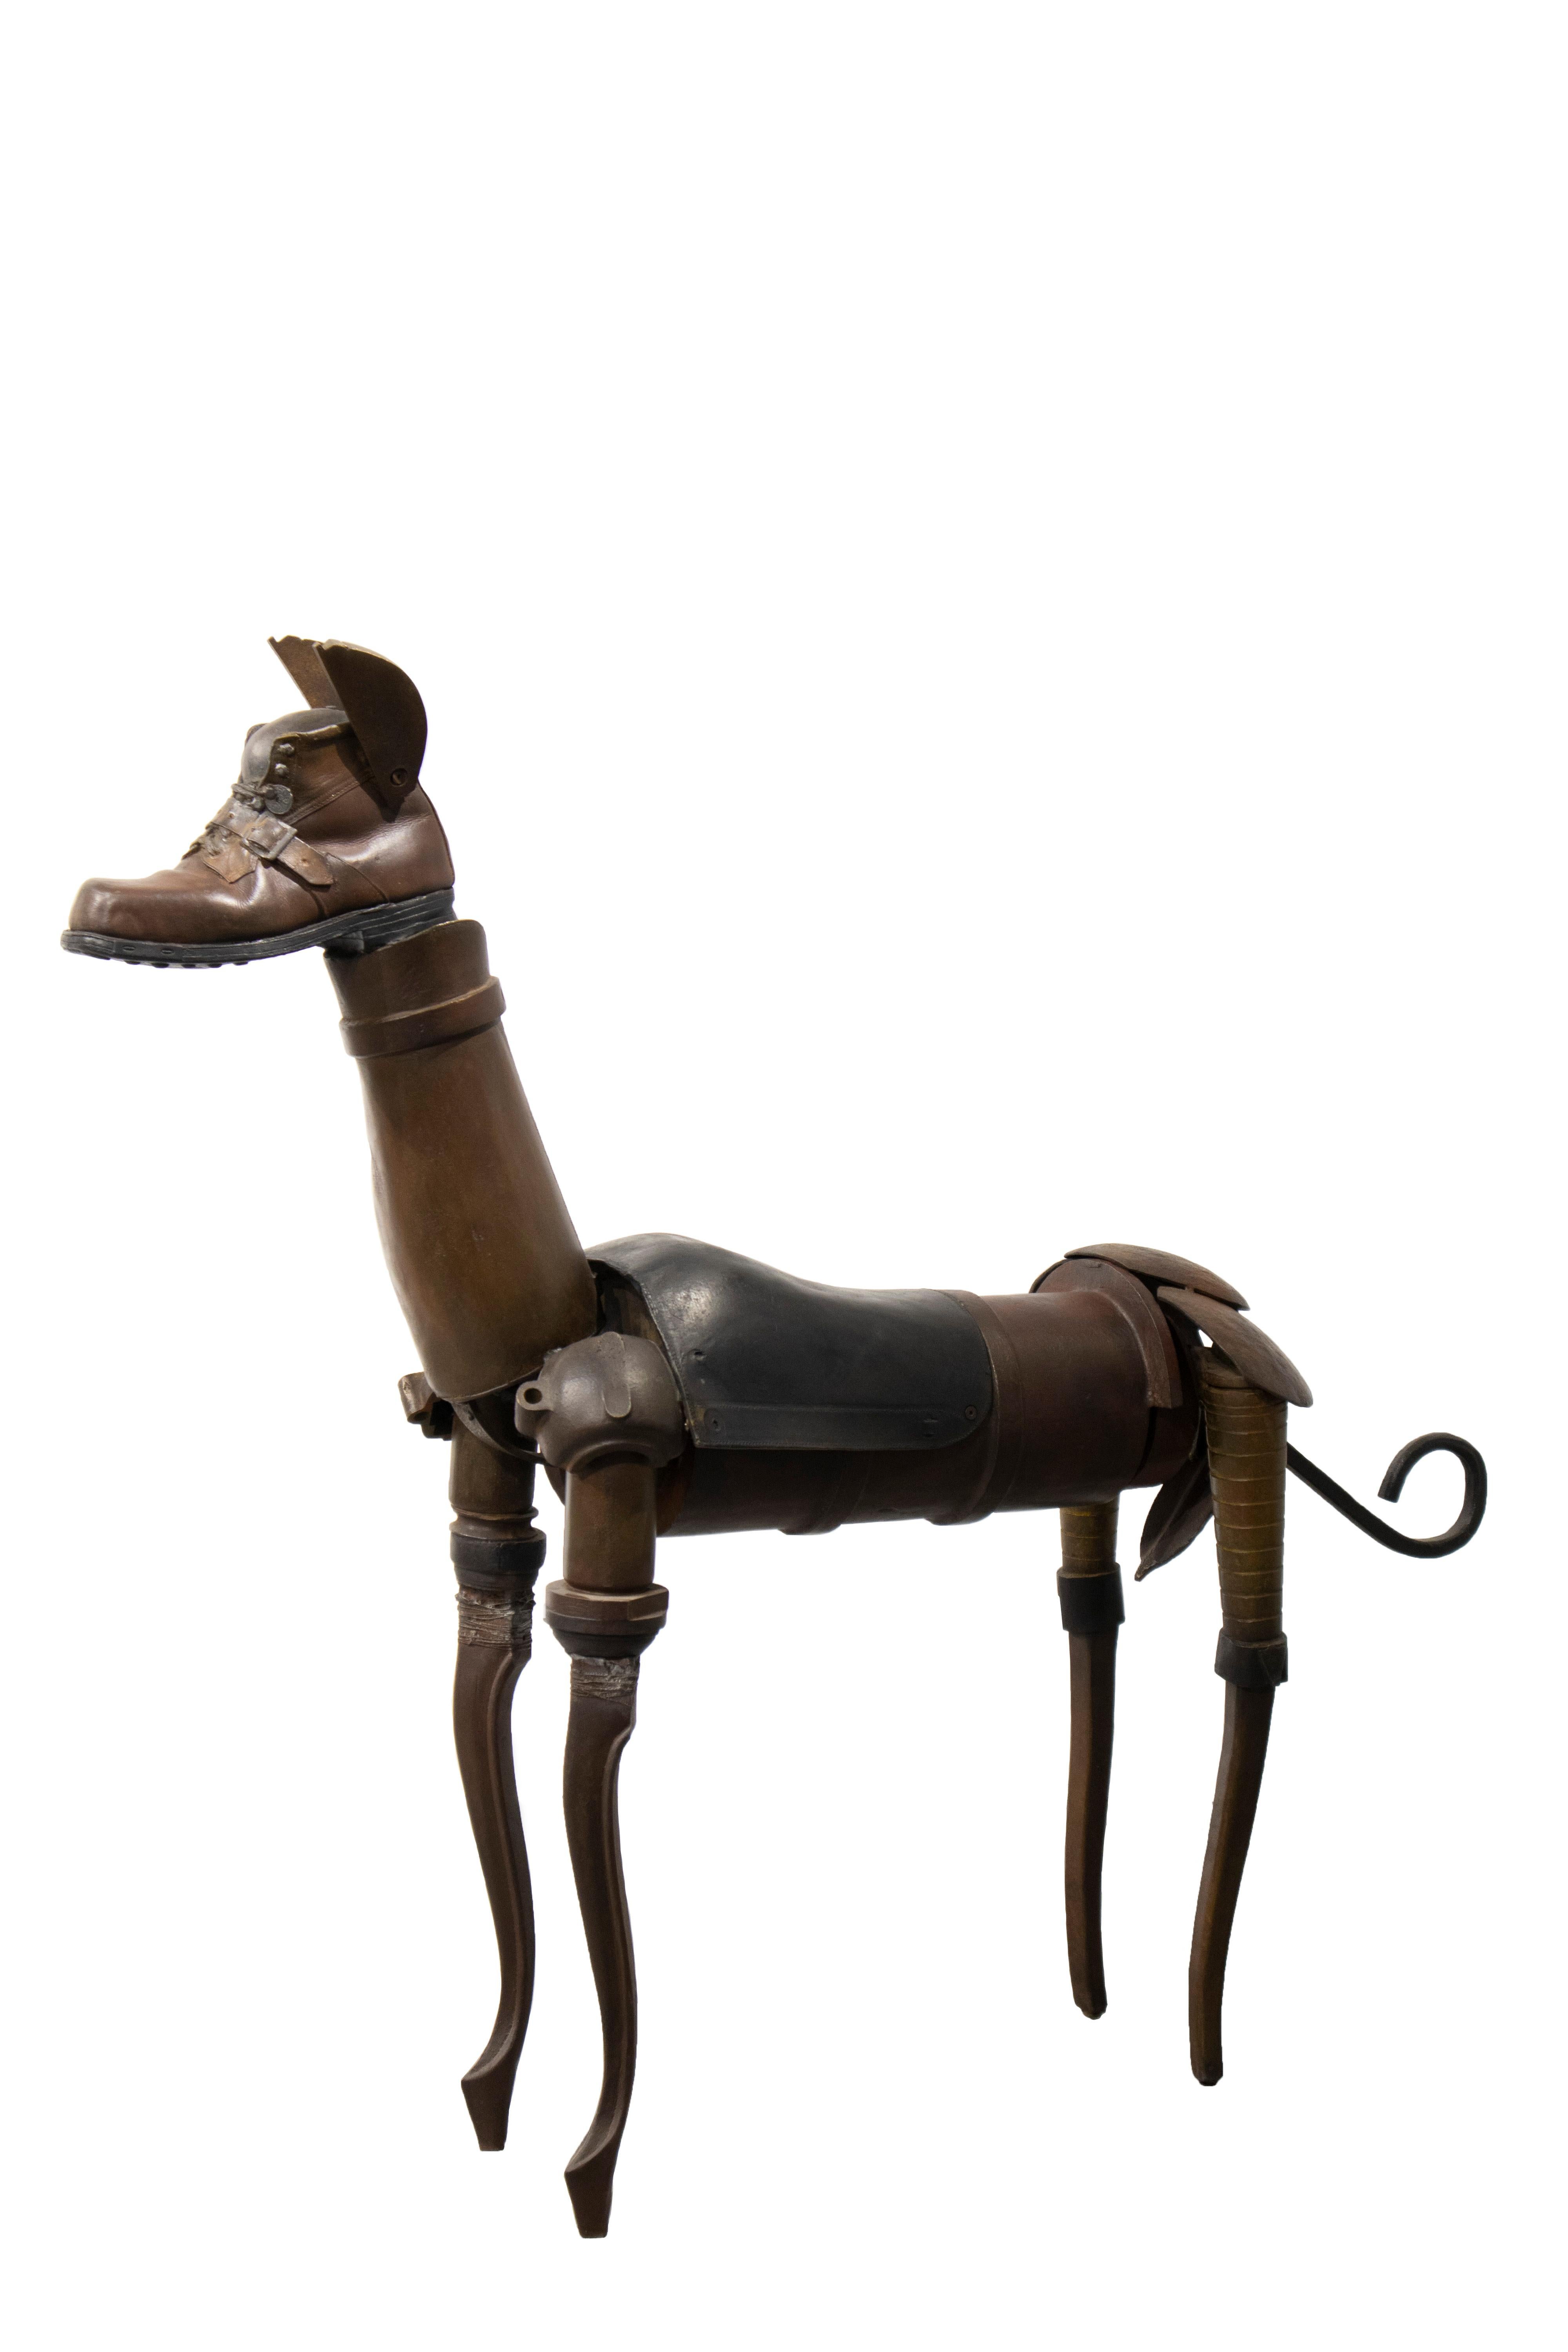 Perro De Bronce - 21ème siècle, sculpture contemporaine, figurative, bronze, chien